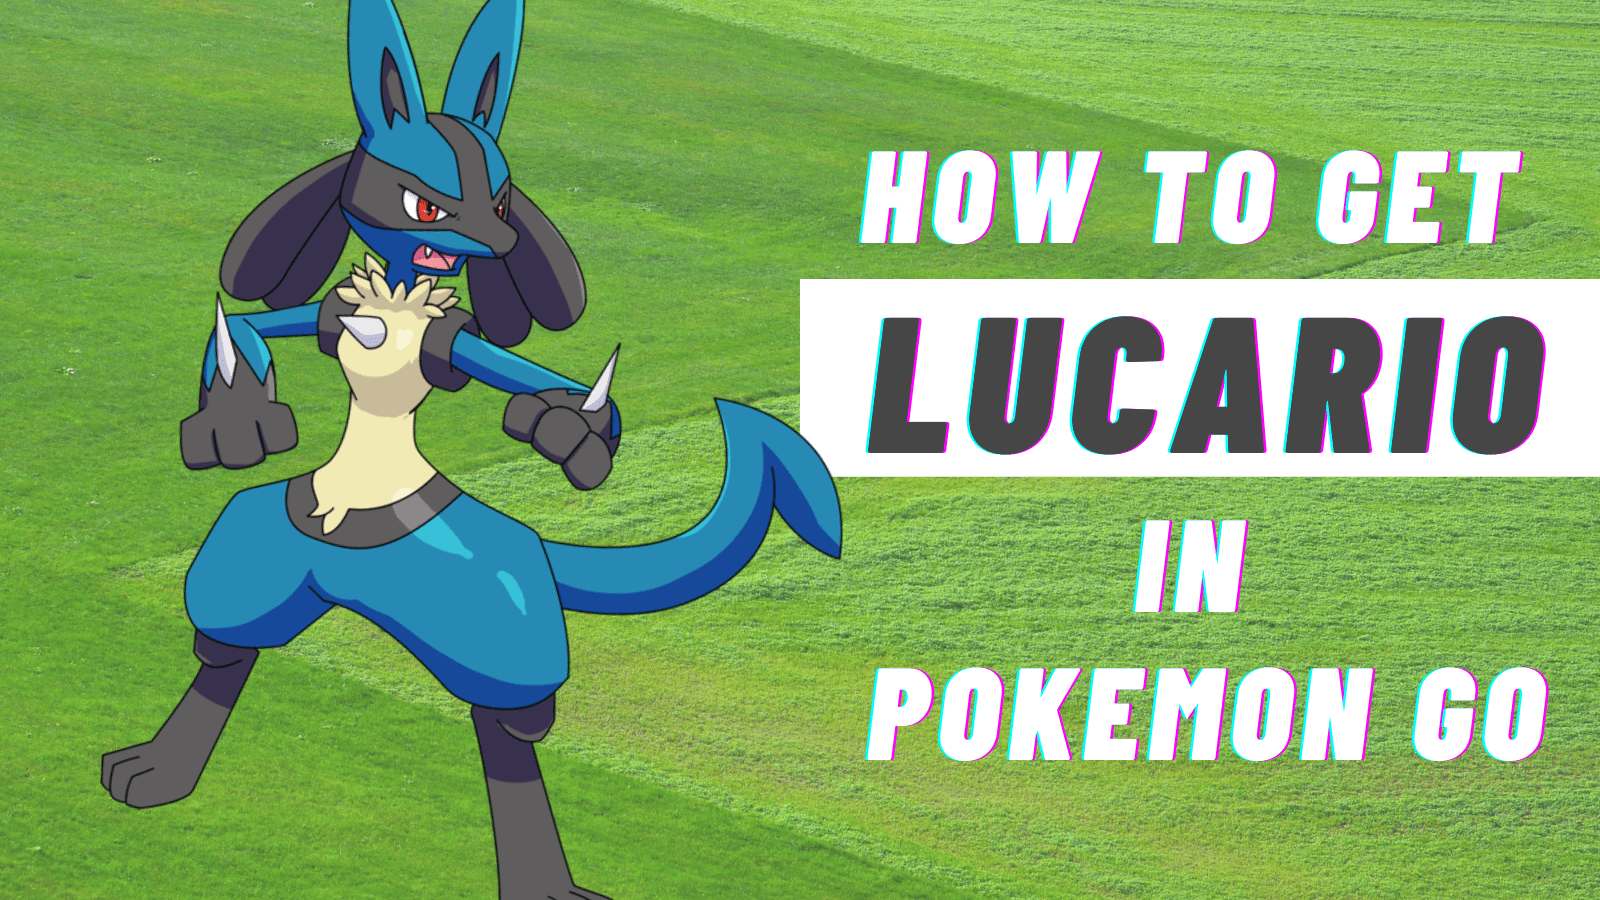 Mega Lucario in Pokemon Go soon. 